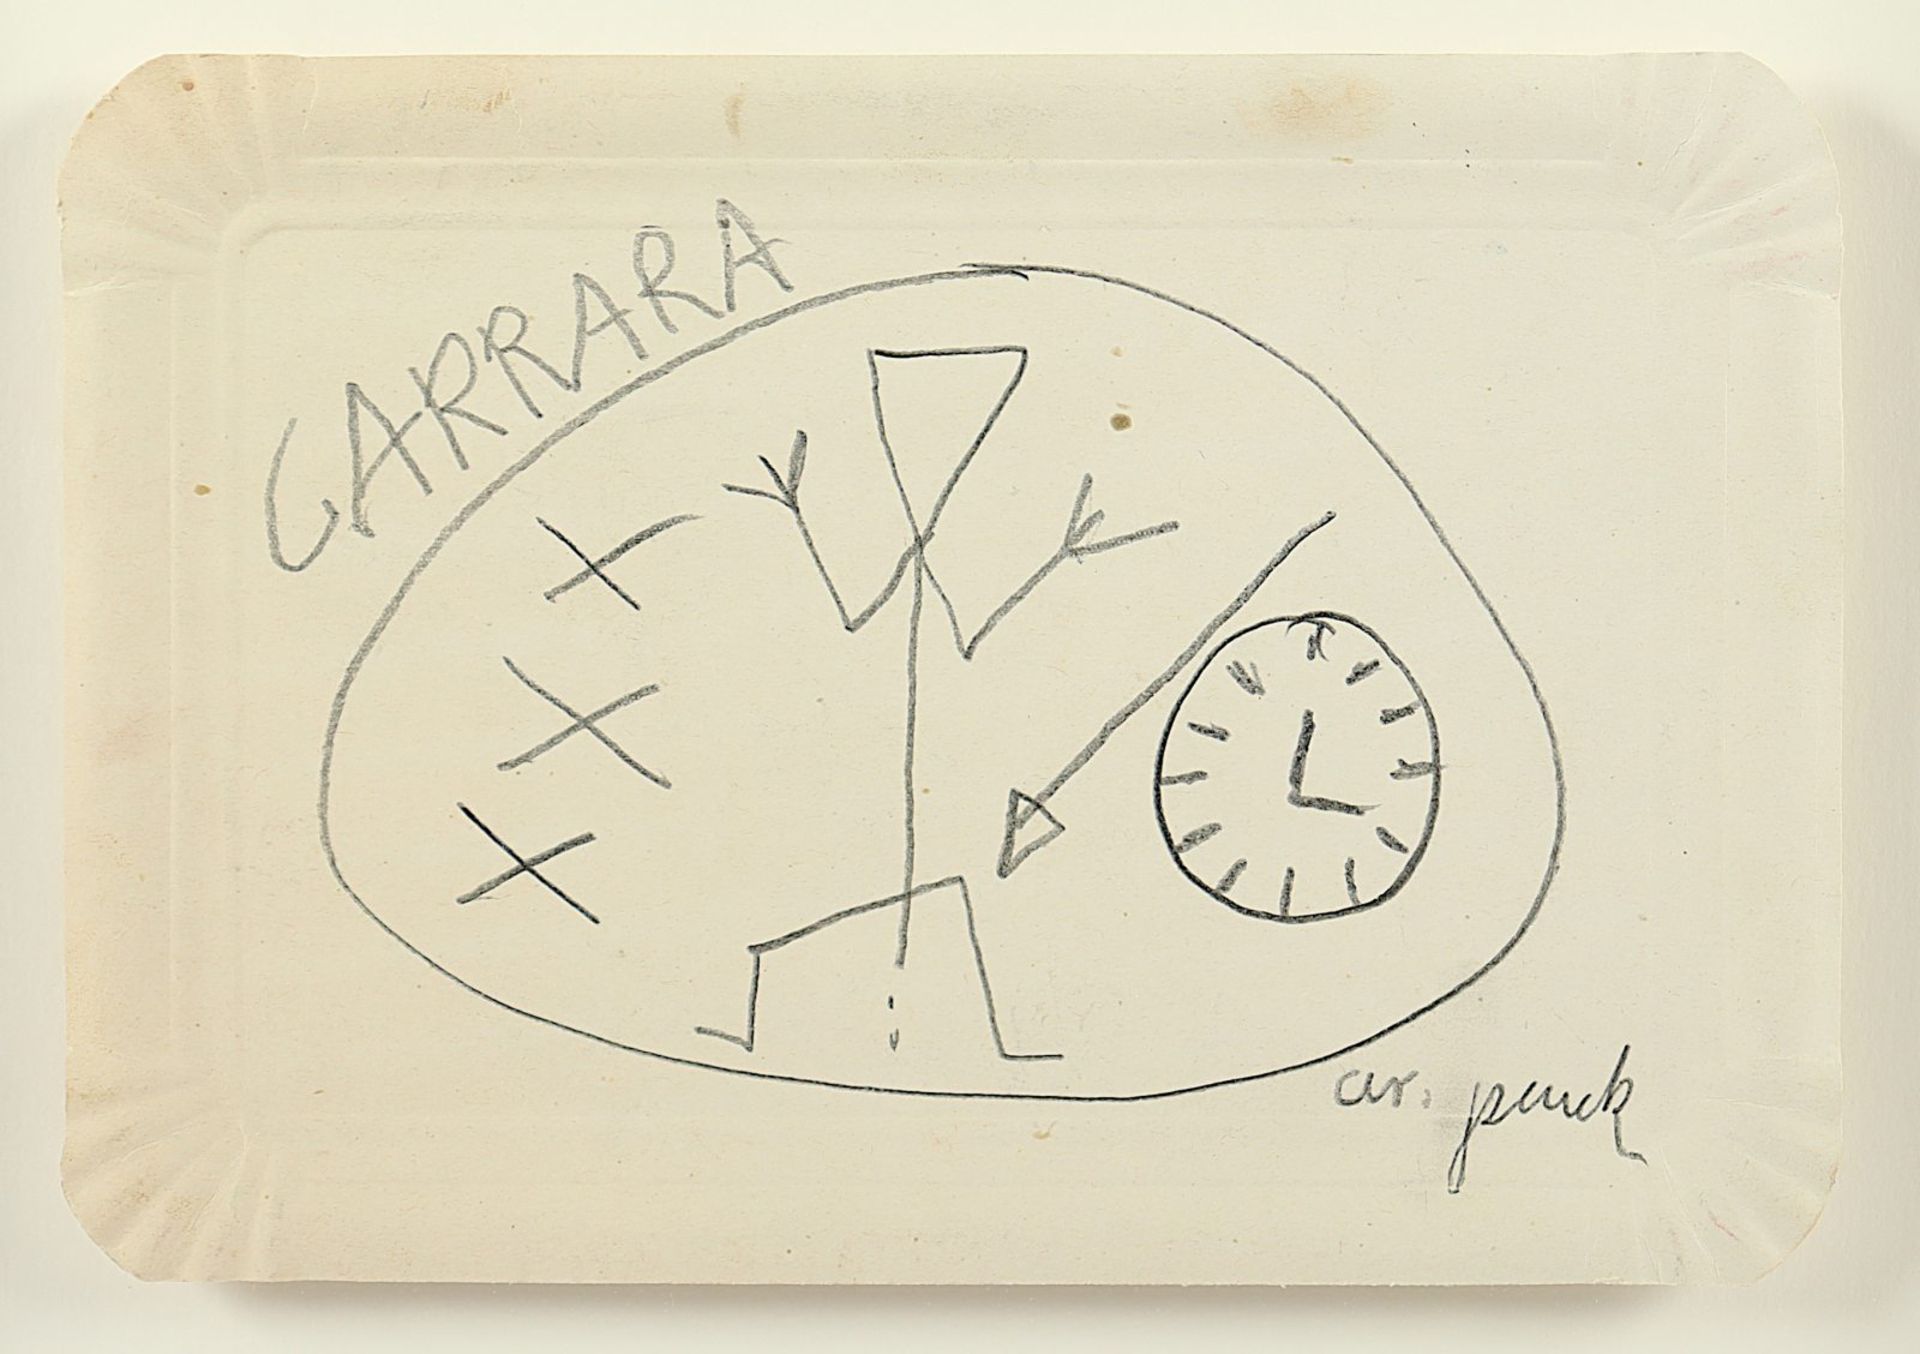 Penck, A.R., Carrara, R.